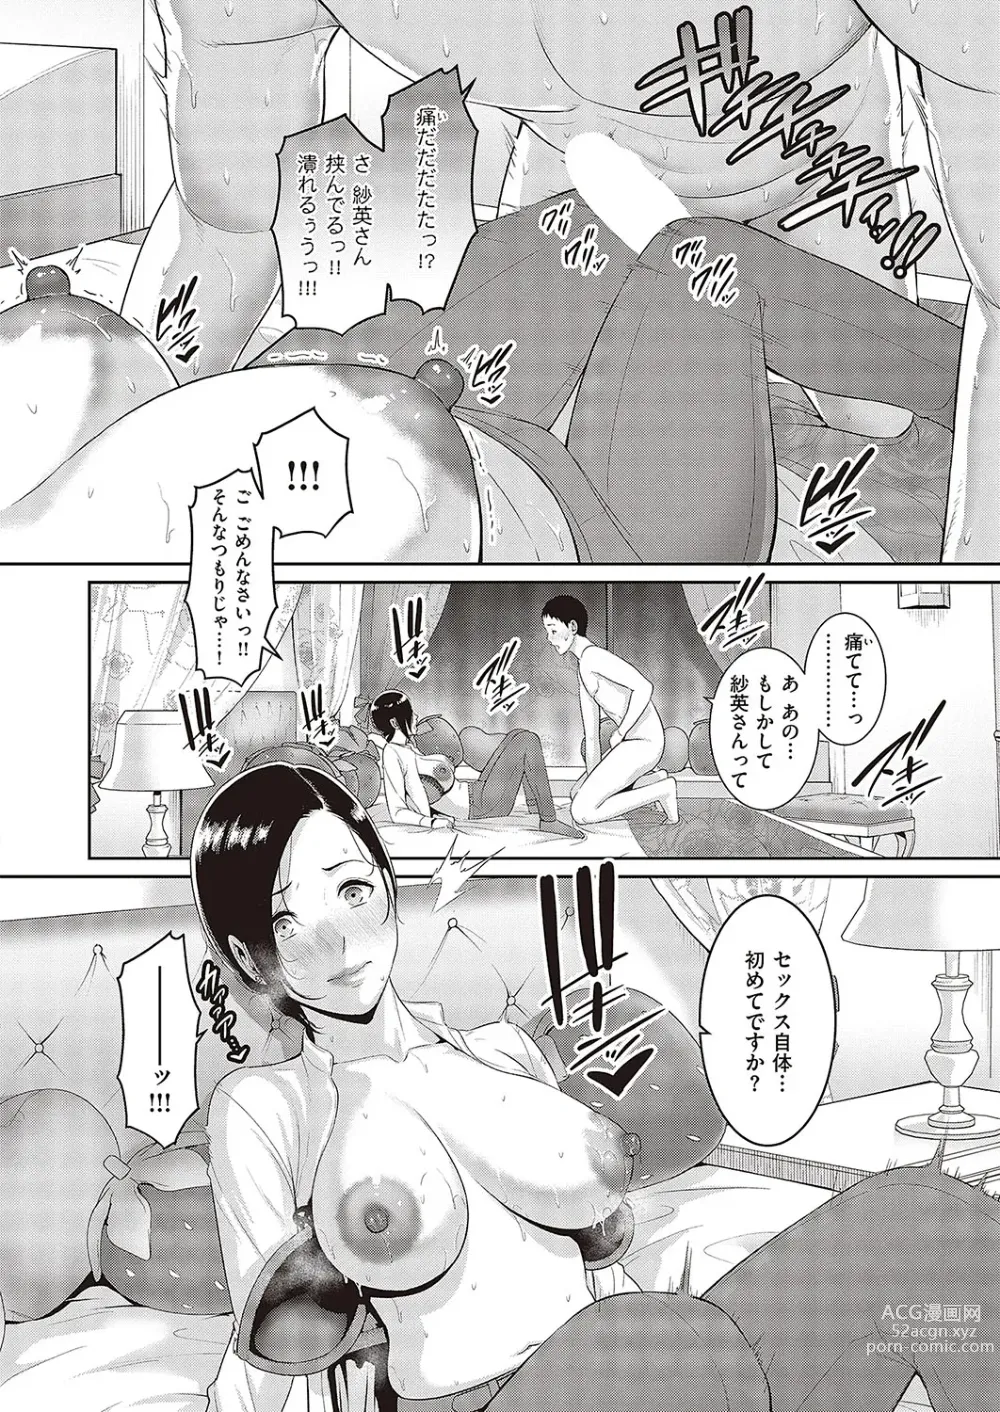 Page 10 of manga 種付けマッチングアプリ Cap.1-2